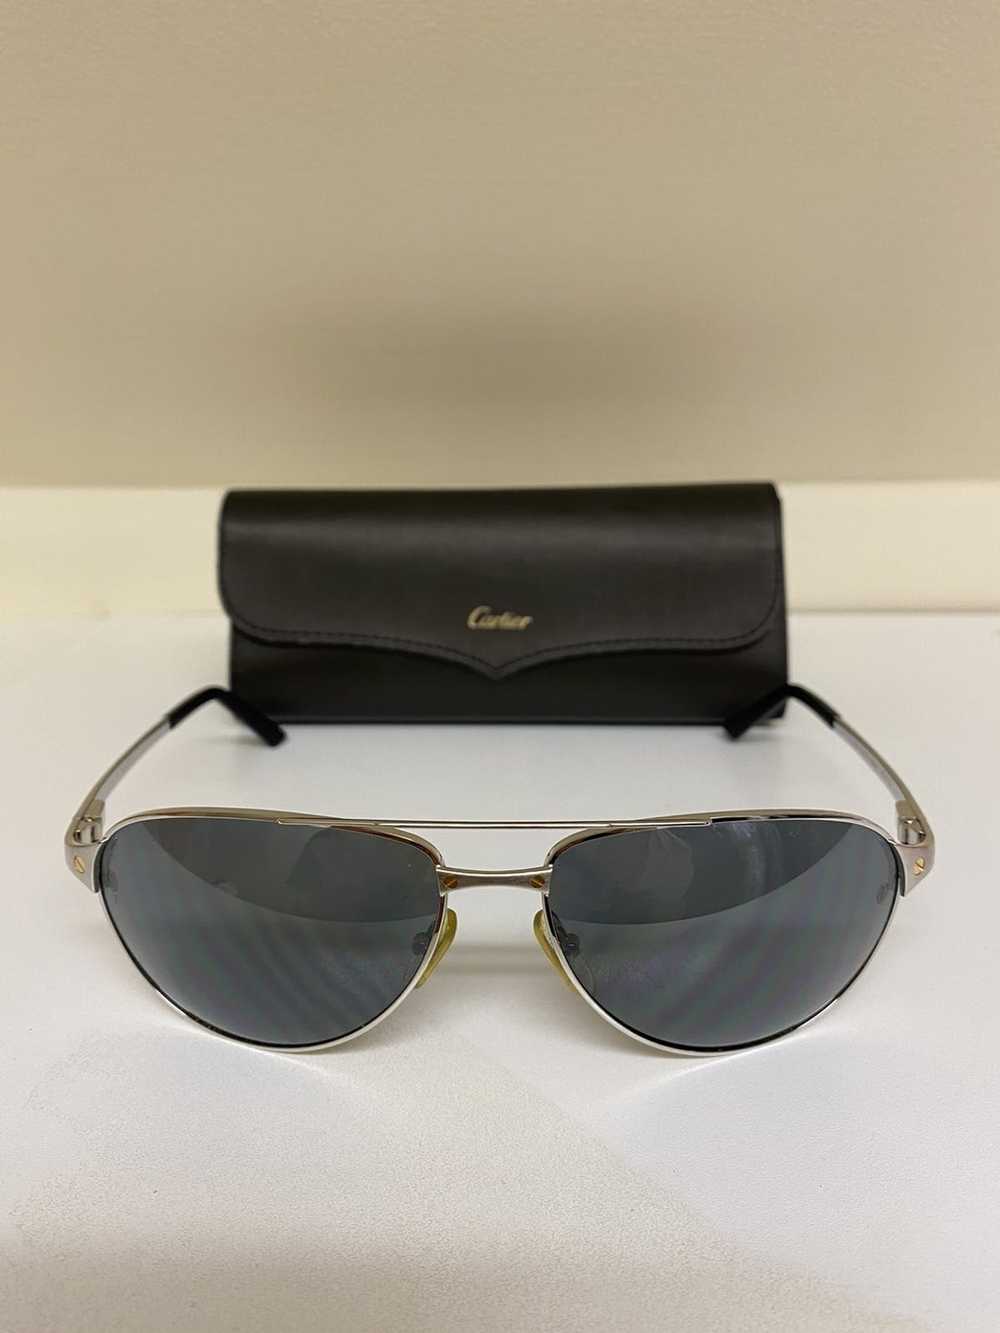 Cartier Cartier sunglasses - image 2